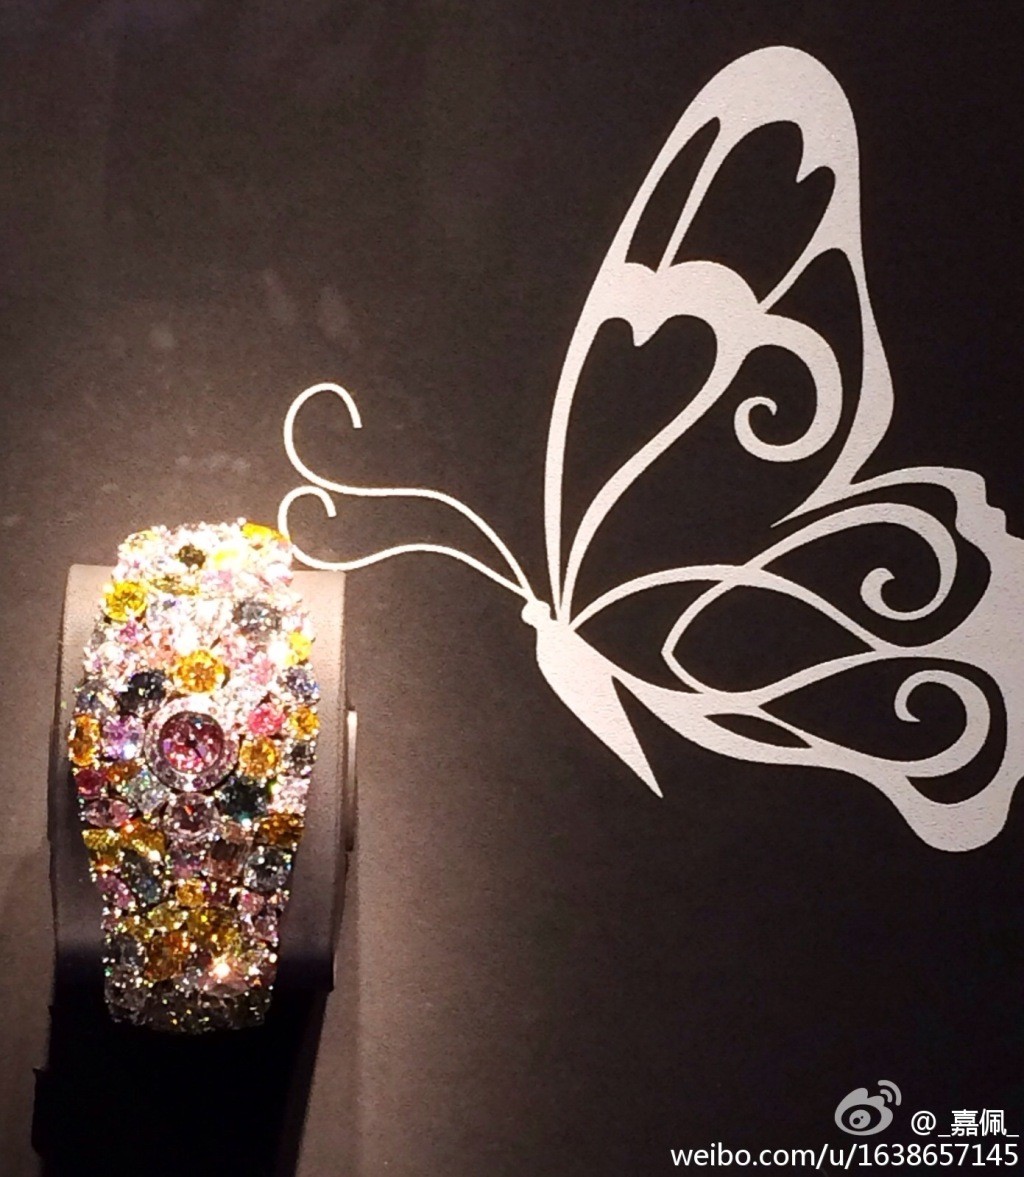 2014年巴塞尔表展：Graff格拉夫高级珠宝腕表